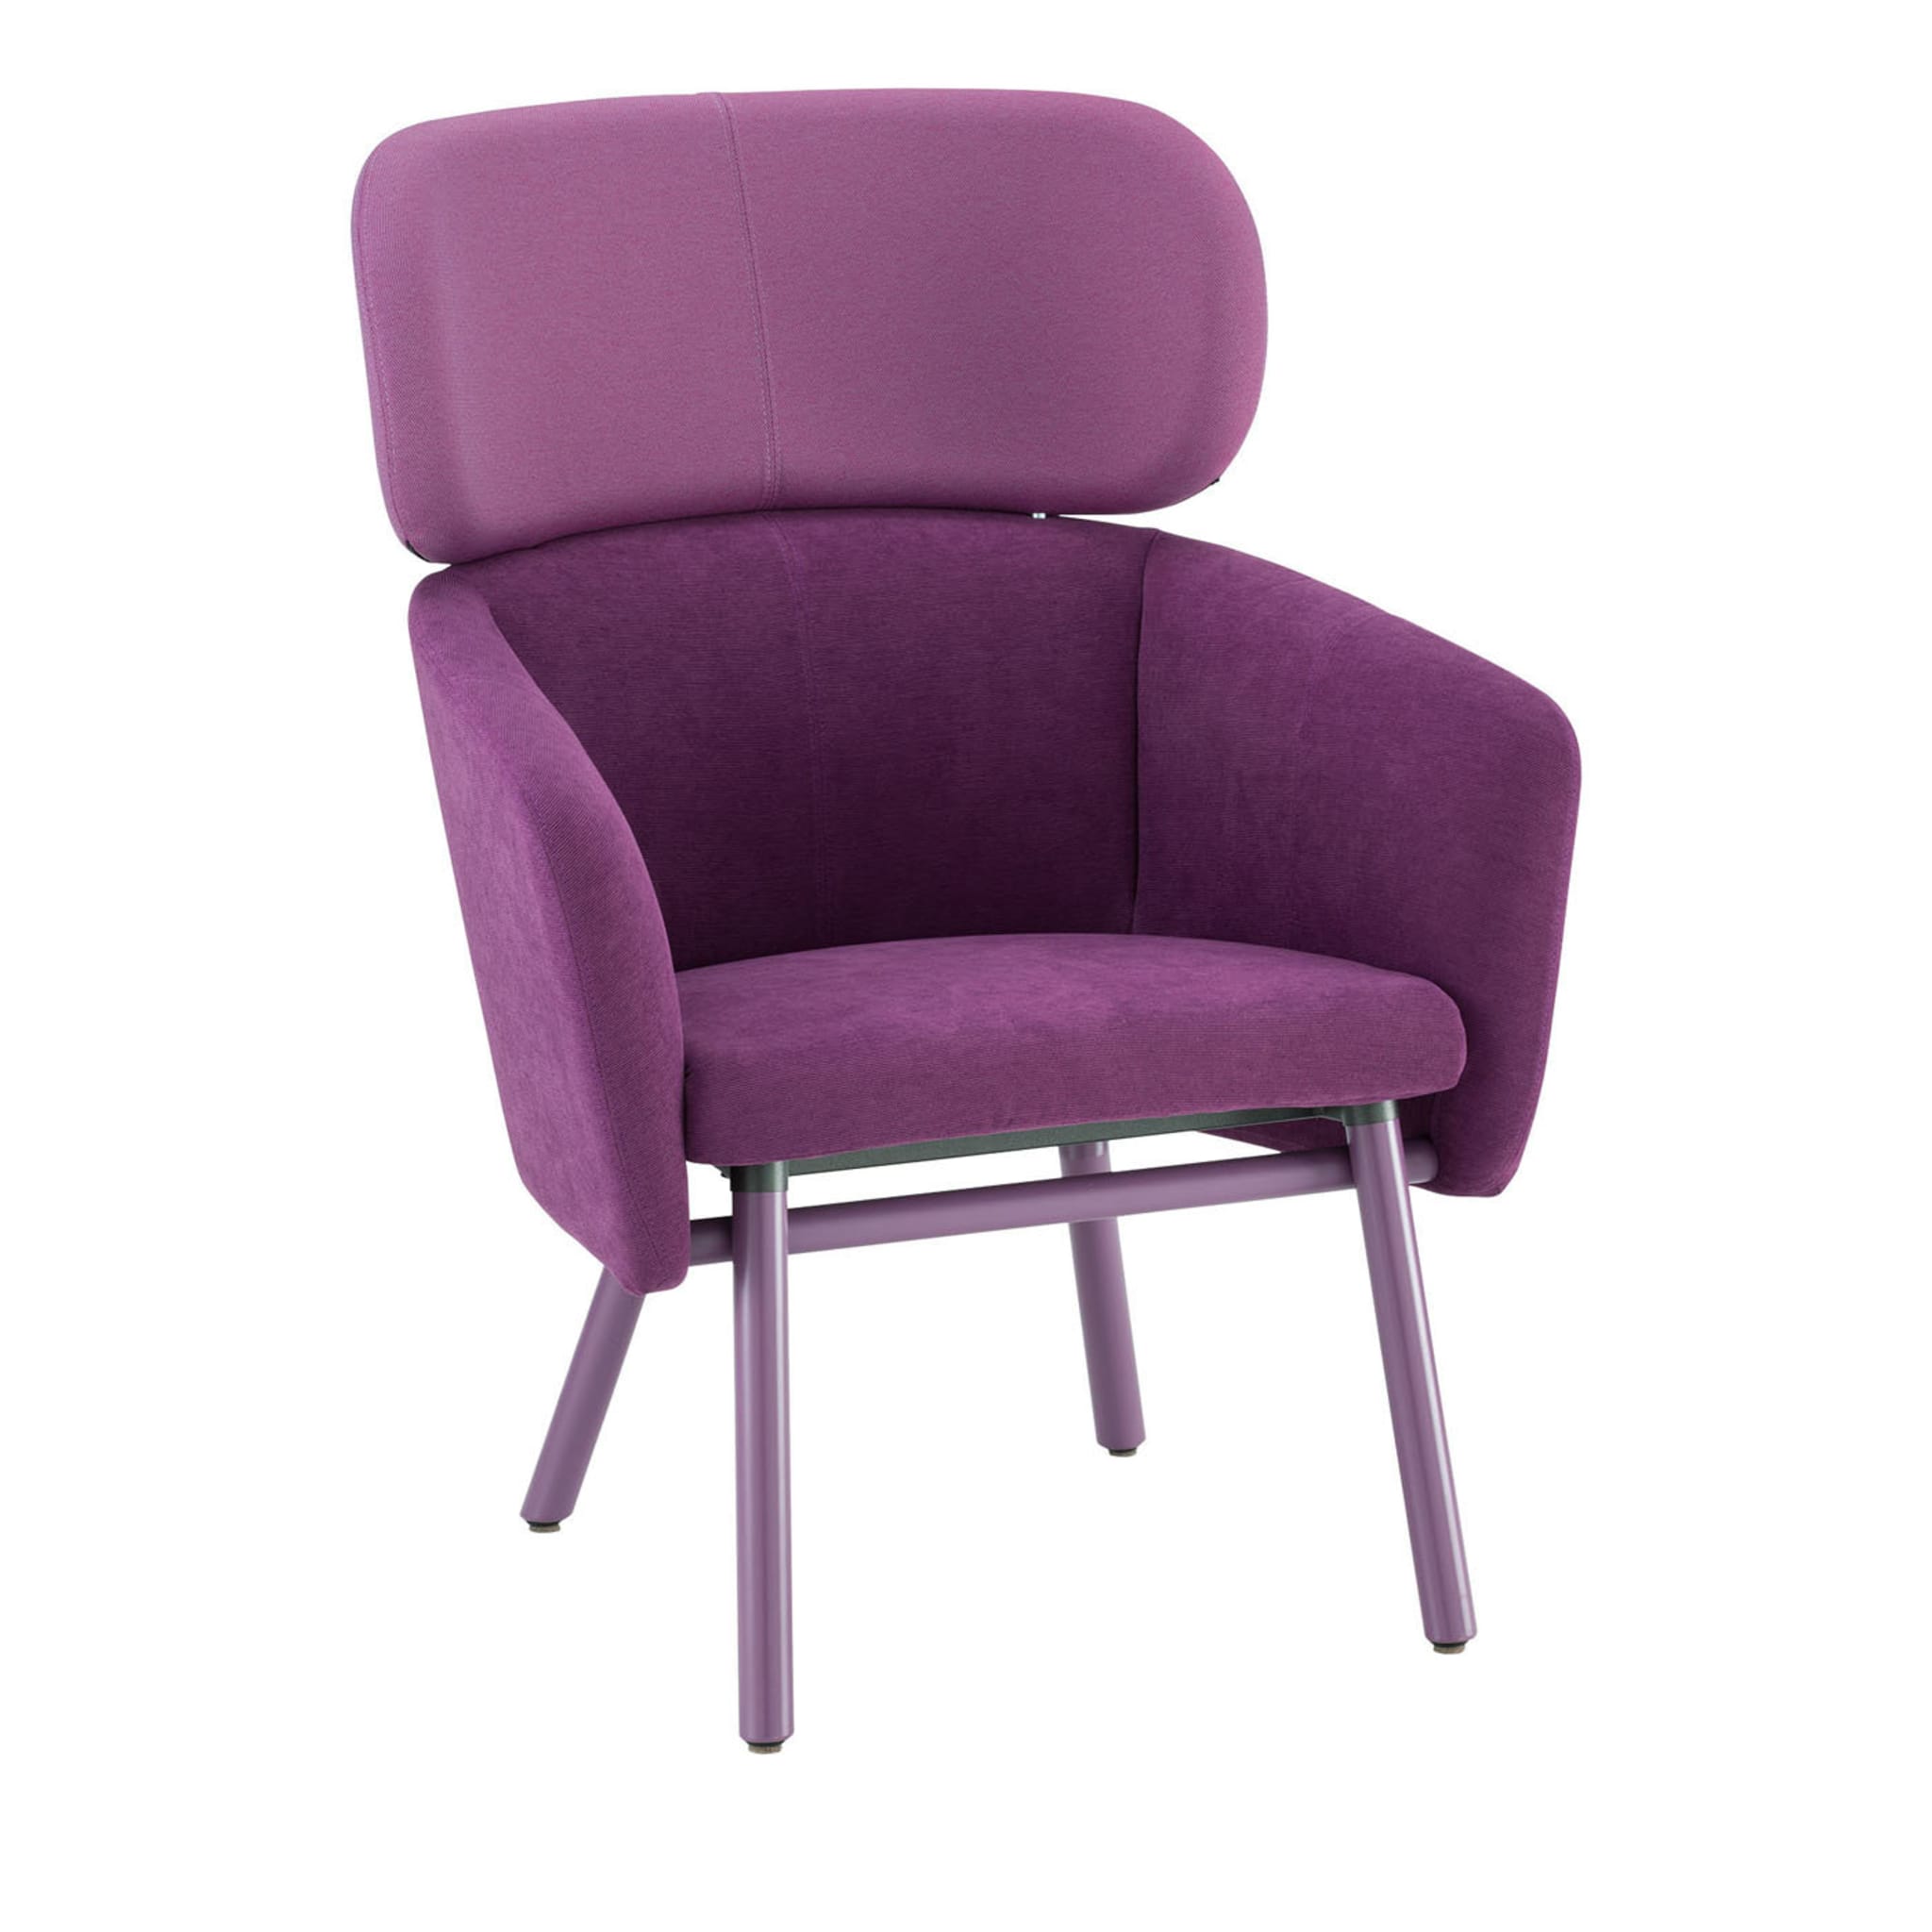 Balù XL Lilac Chair By Emilio Nanni - Main view